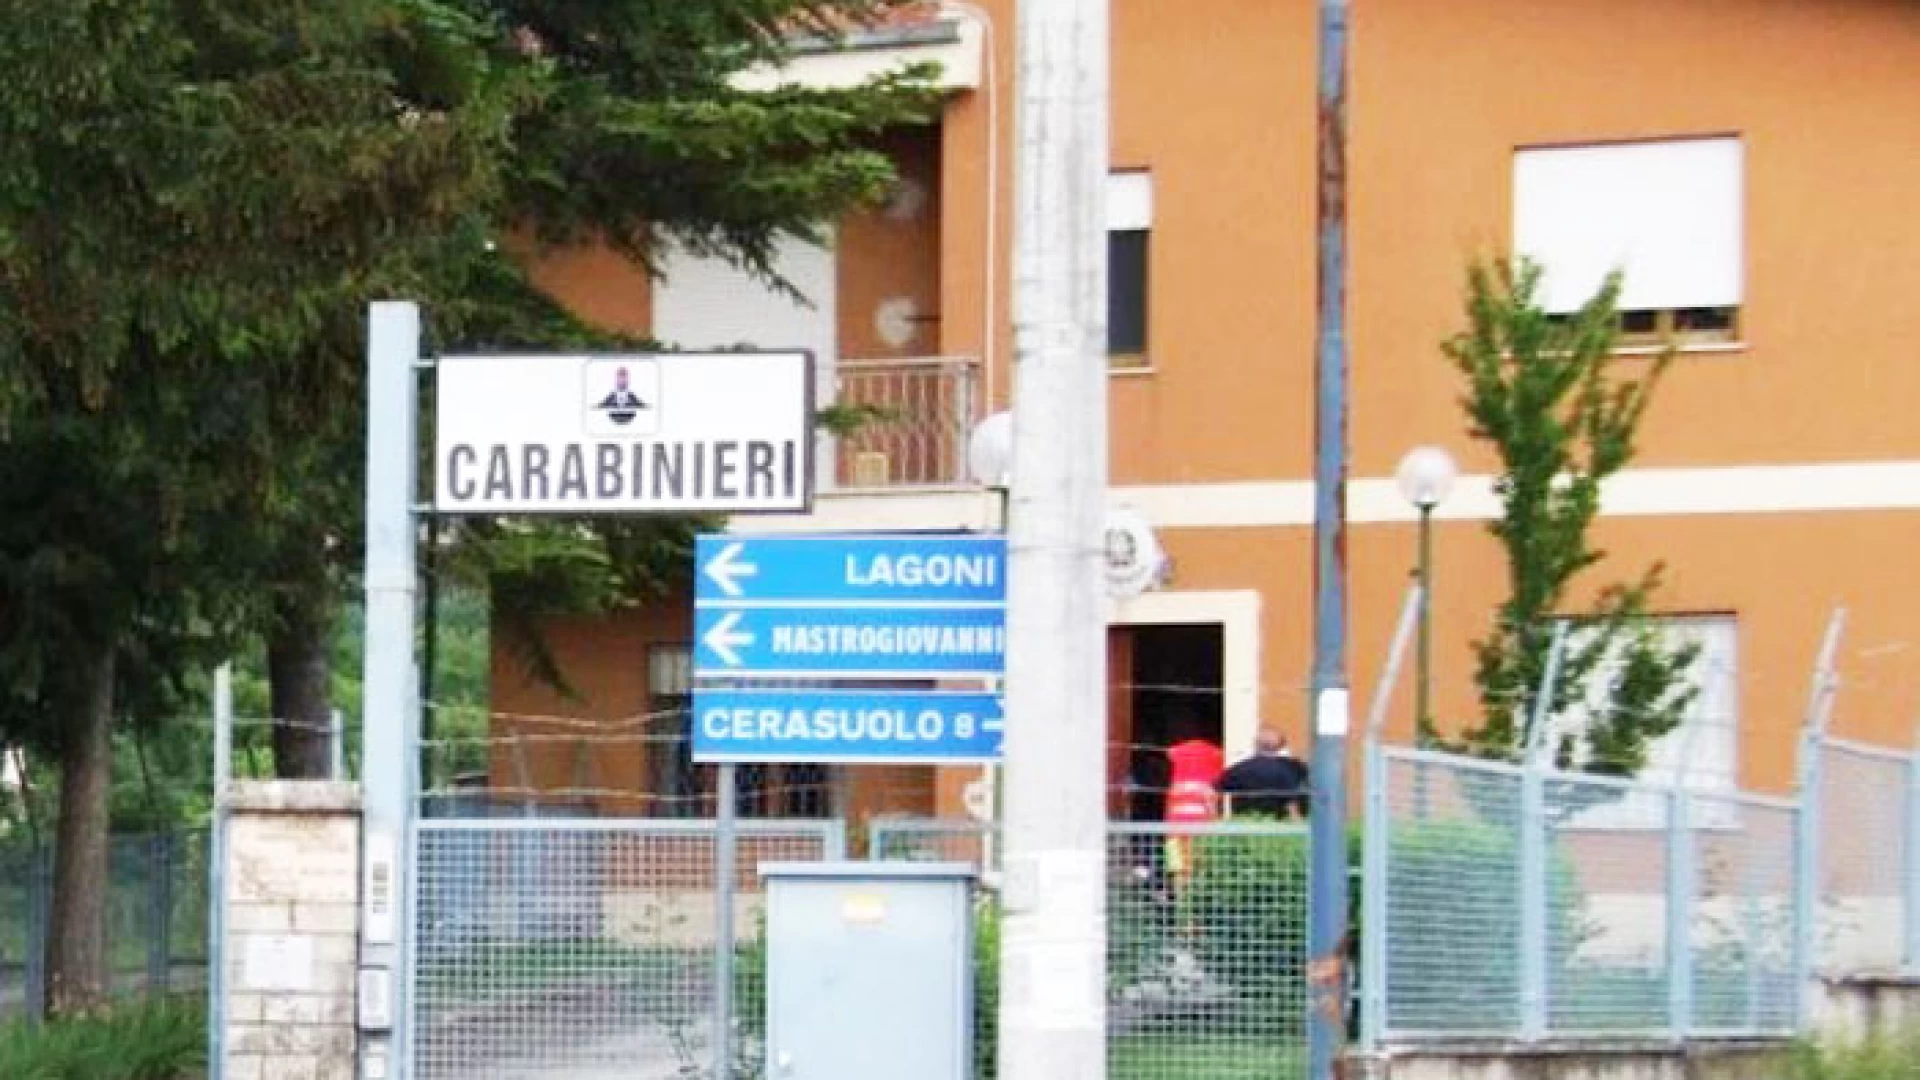 Pozzilli: Residenze “fantasma” per truffare le compagnie assicurative, tre persone denunciate dai Carabinieri.